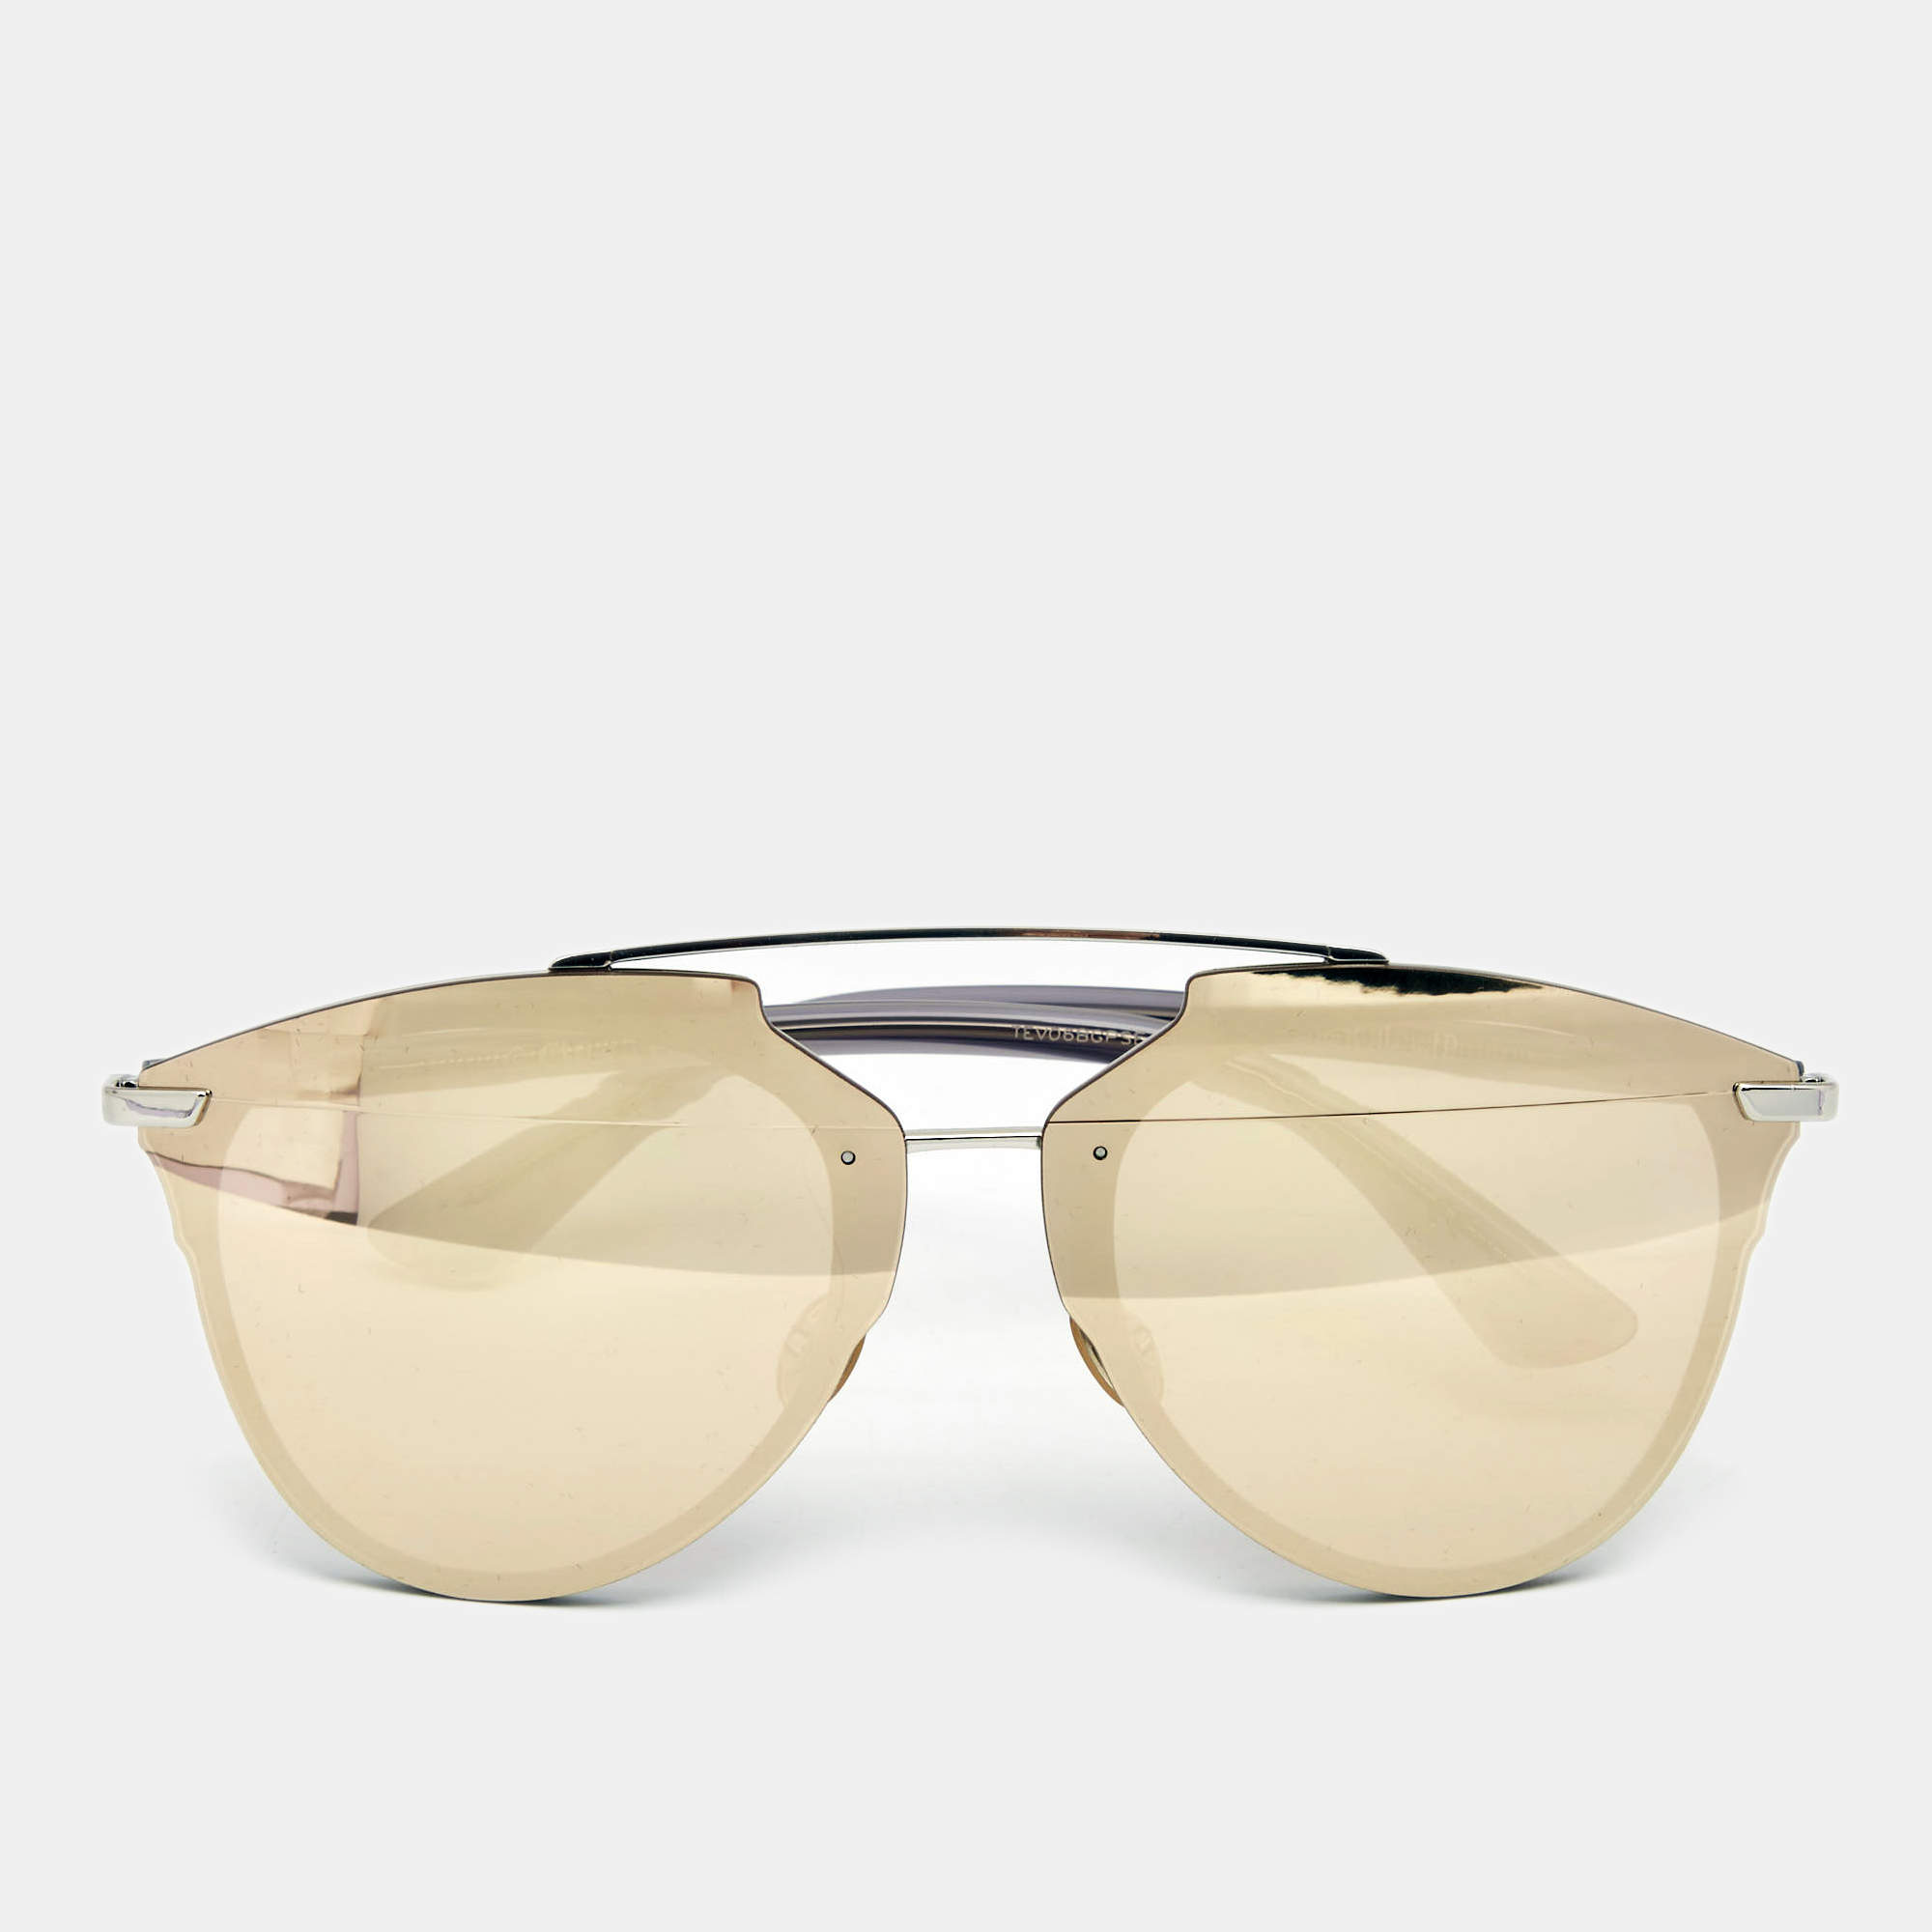 Mua Kính Mát Dior Reflected Sunglasses 52 mm B00ULX0QP0 Màu Xám  Dior   Mua tại Vua Hàng Hiệu h032646